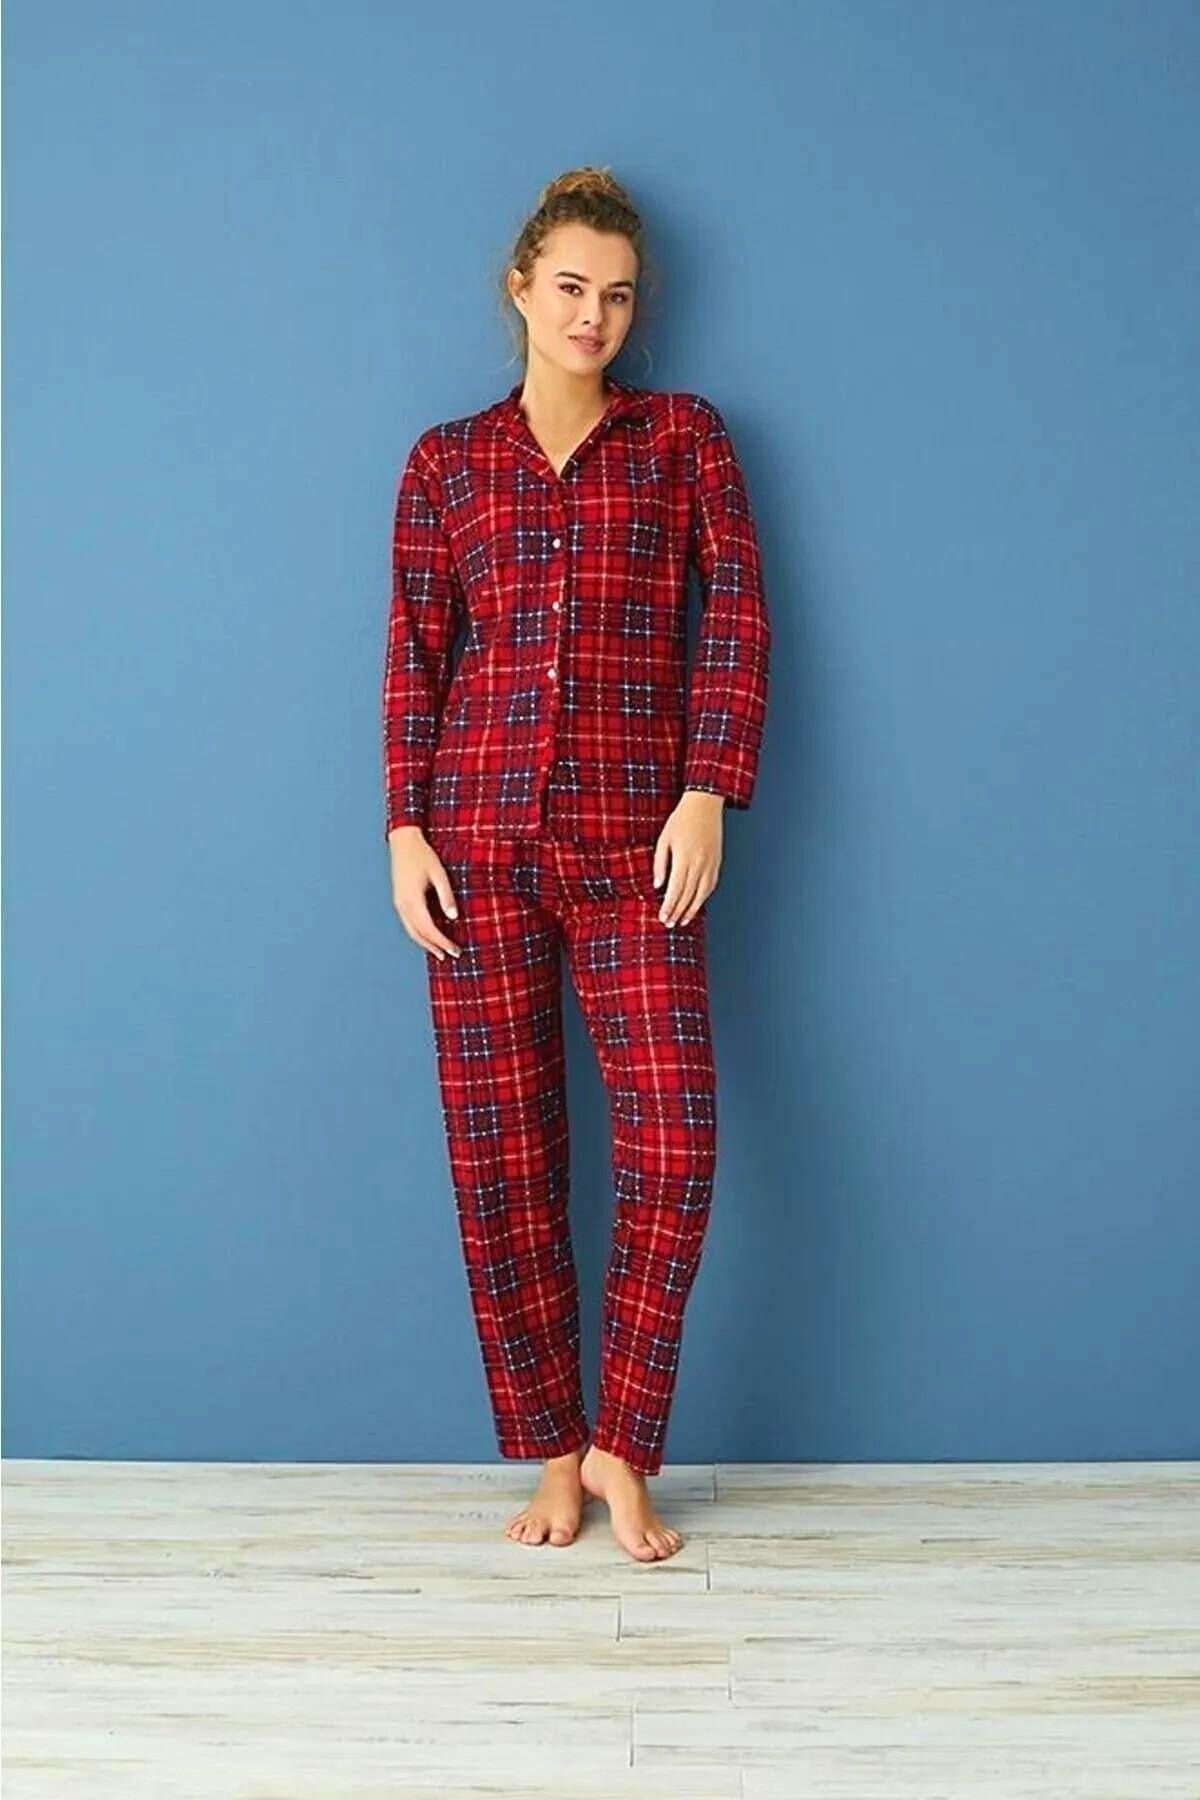 Dreamy Pamuklu Süet Ekose Desenli Pijama Altı Pantolon - Kırmızı/Mavi